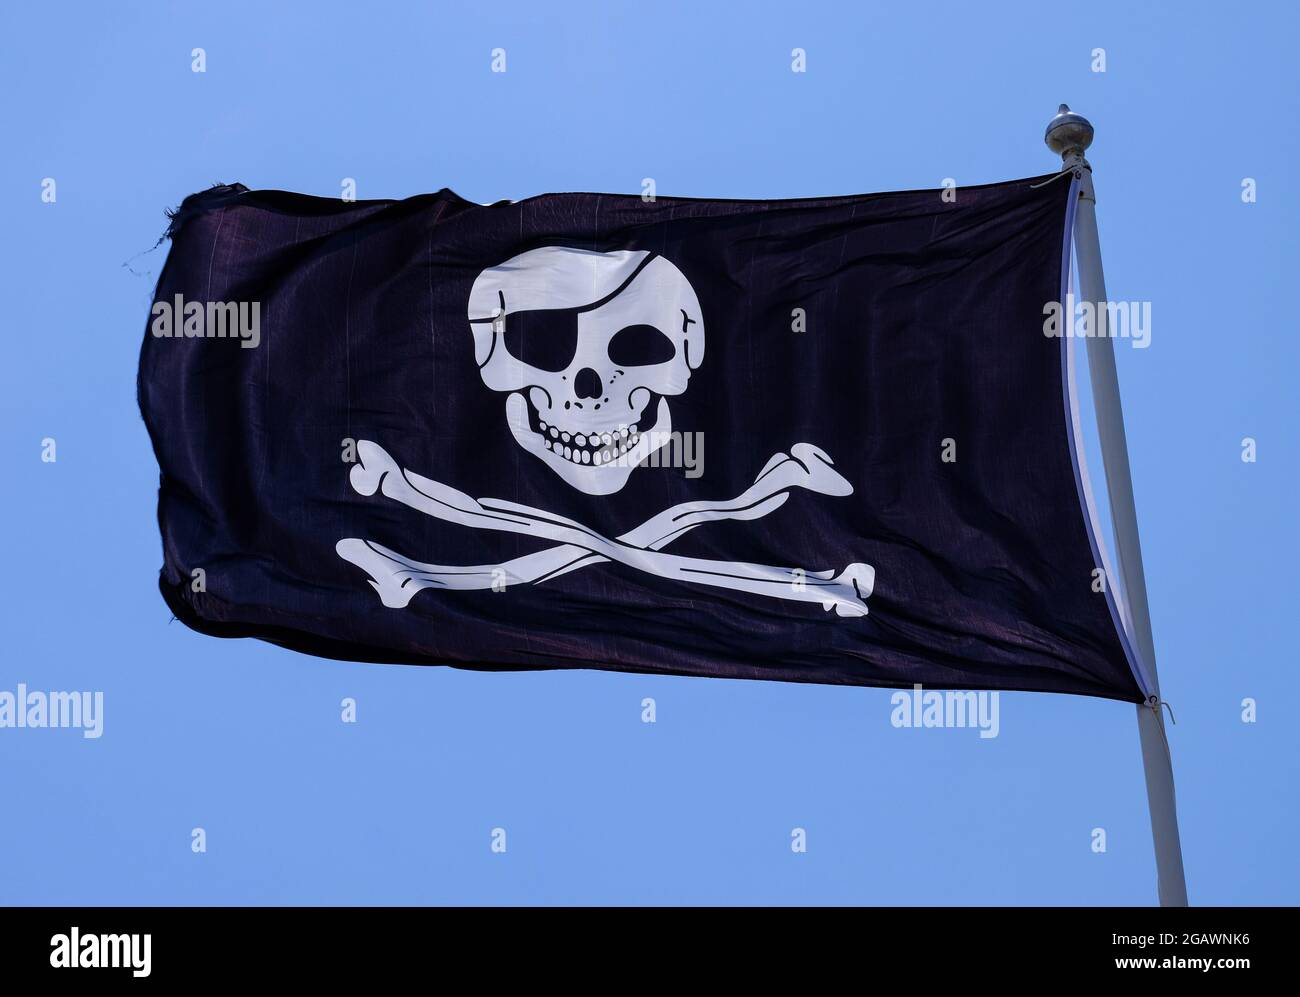 Bandera pirata también conocida como bandera de Jolly Roger o bandera de Skull and Cross Bones, representada contra un cielo azul. Foto de stock